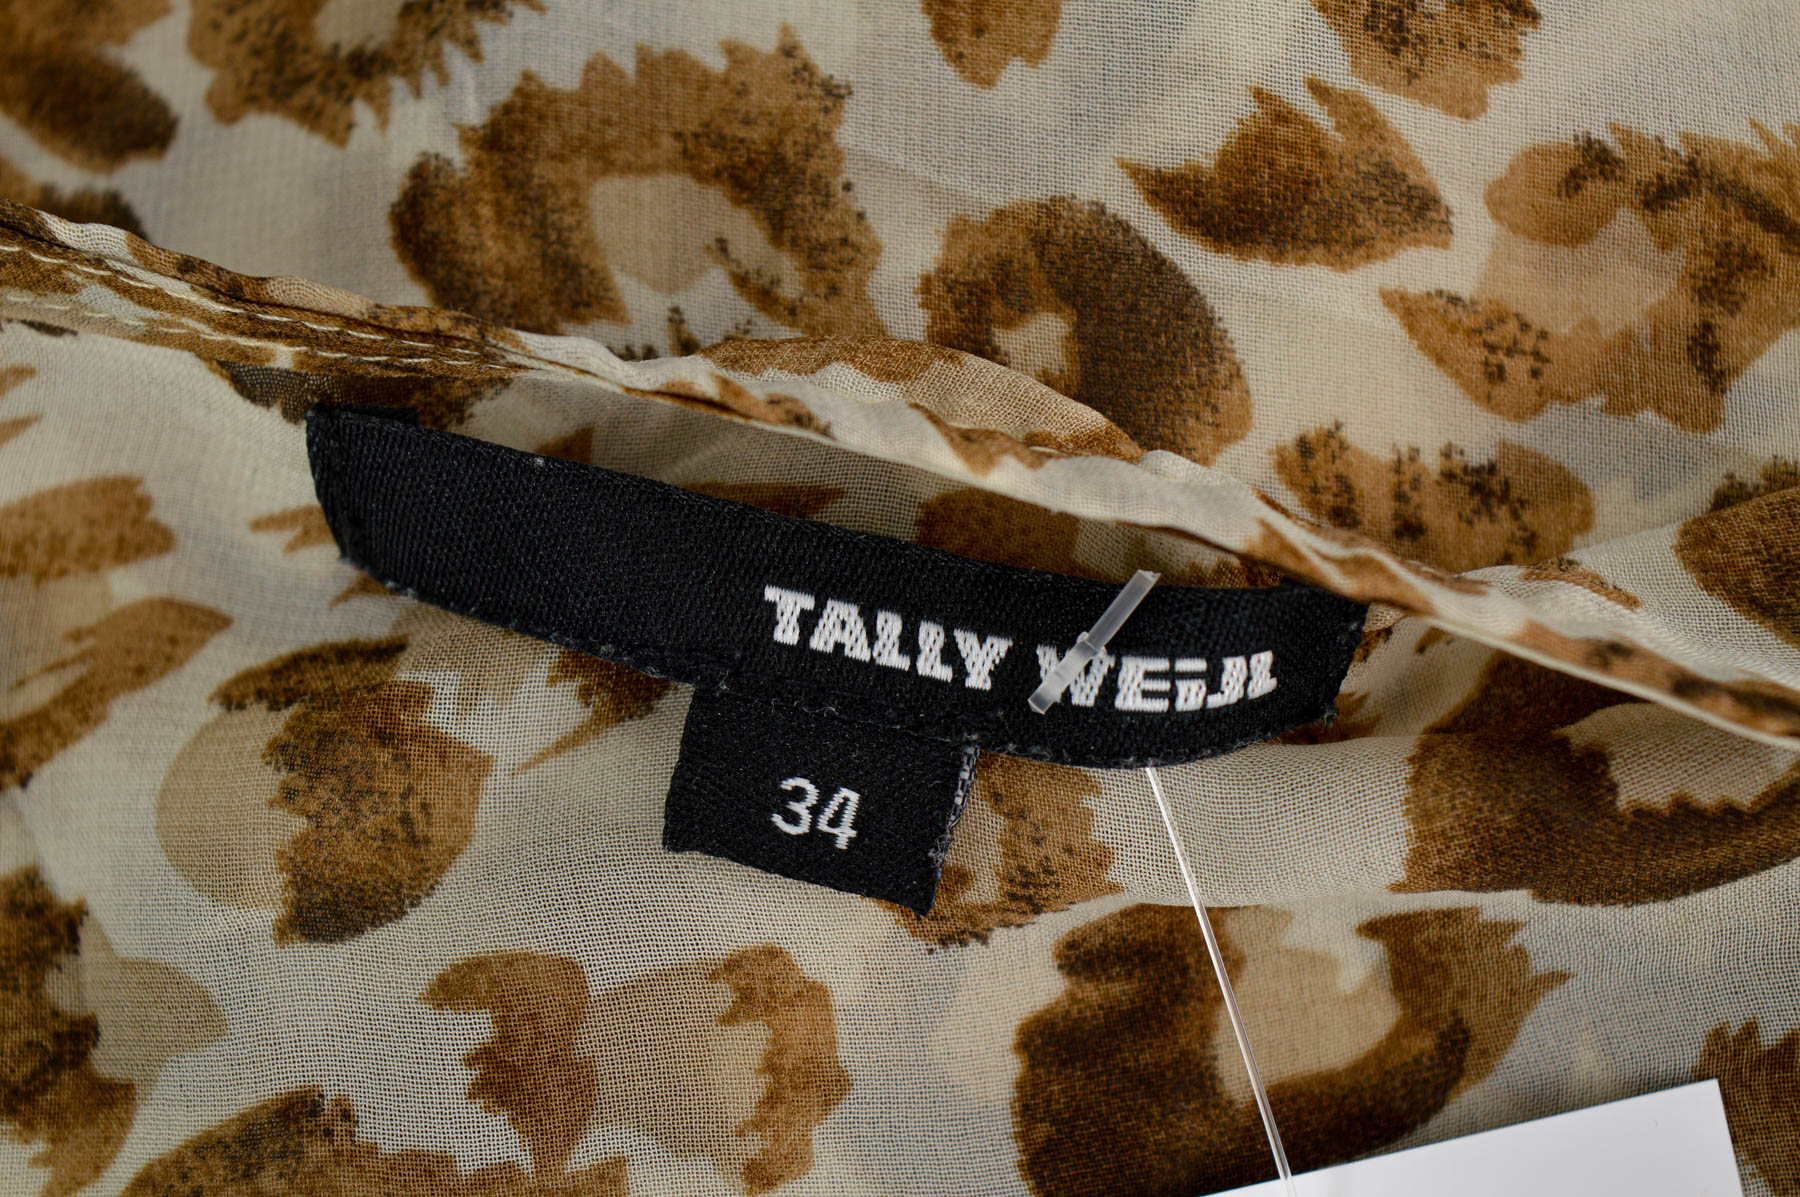 Women's shirt - Tally Weijl - 2